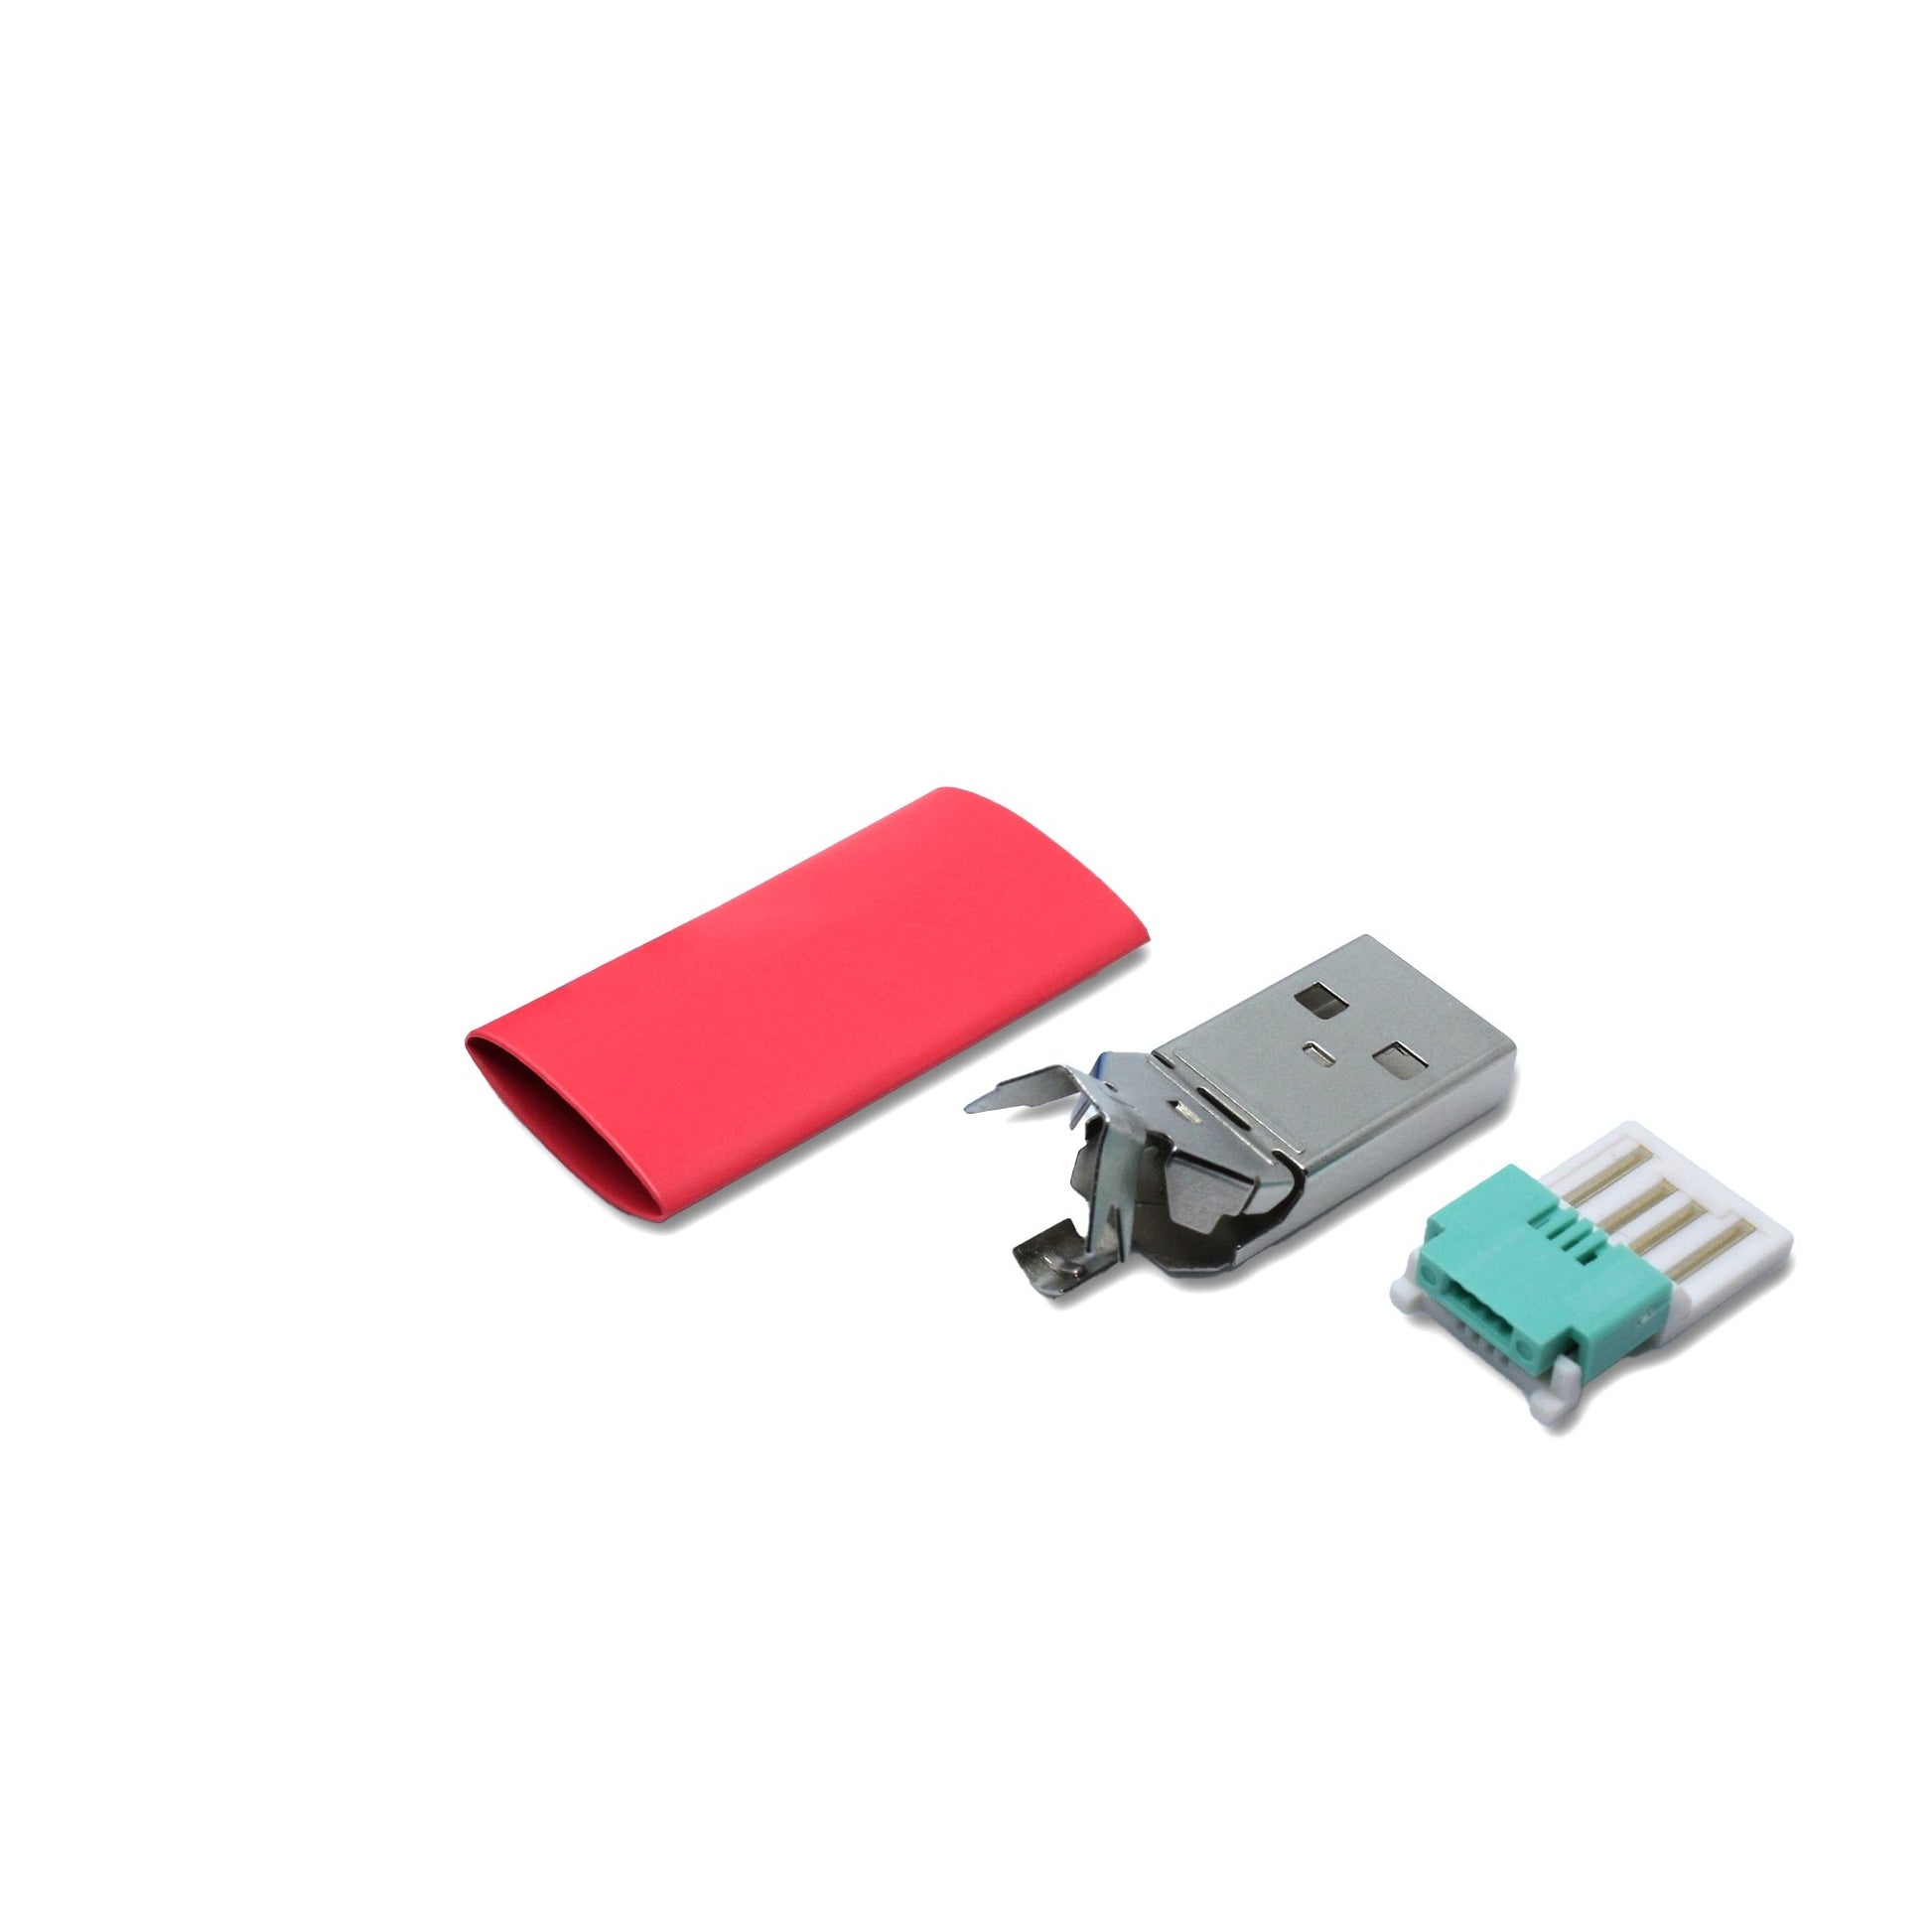 USB A Stecker Einzelteile rot, mit dem Ersatzteil kann ein USB 2.0 Kabel lötfrei (crimpen) repariert werden